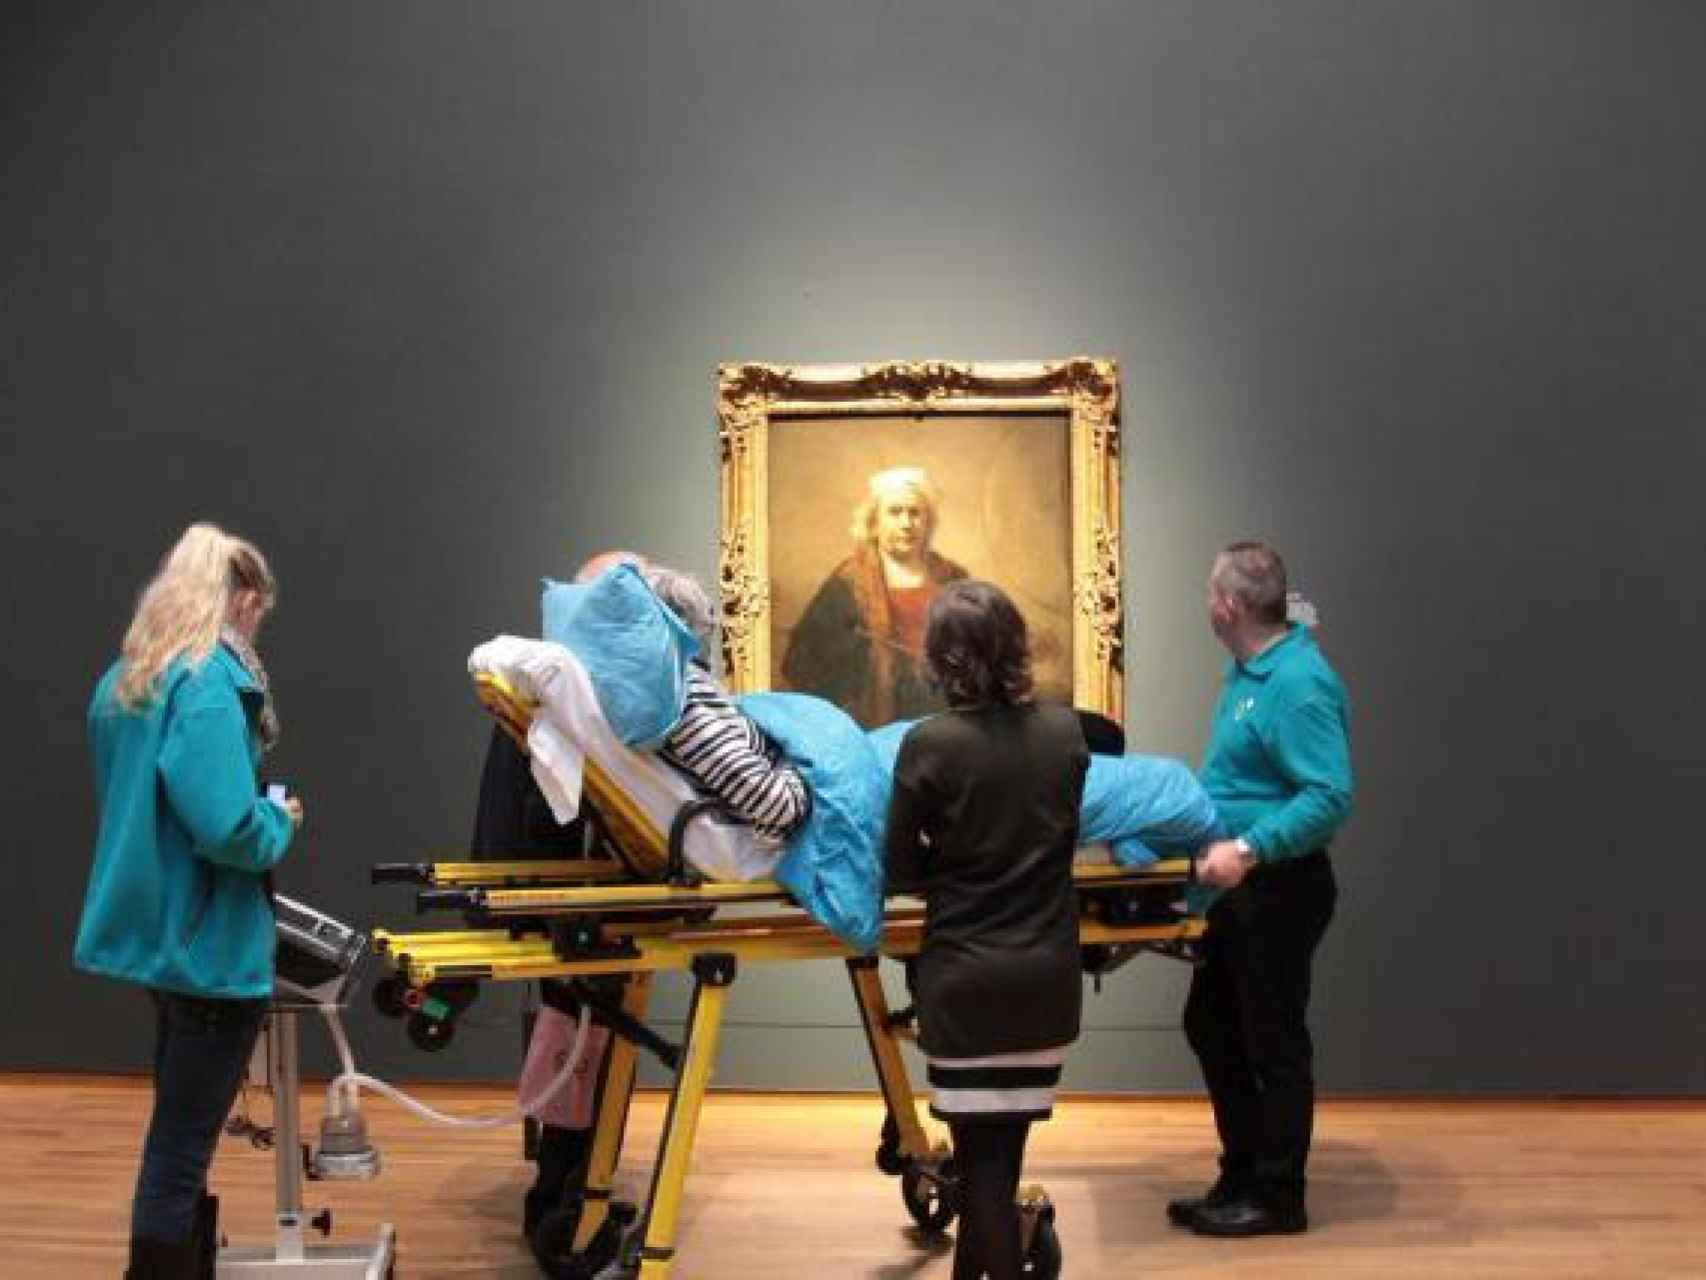 Una paciente de esclerosis lateral amiotrófica pidió como último deseo ir a ver la obra de Rembrandt.